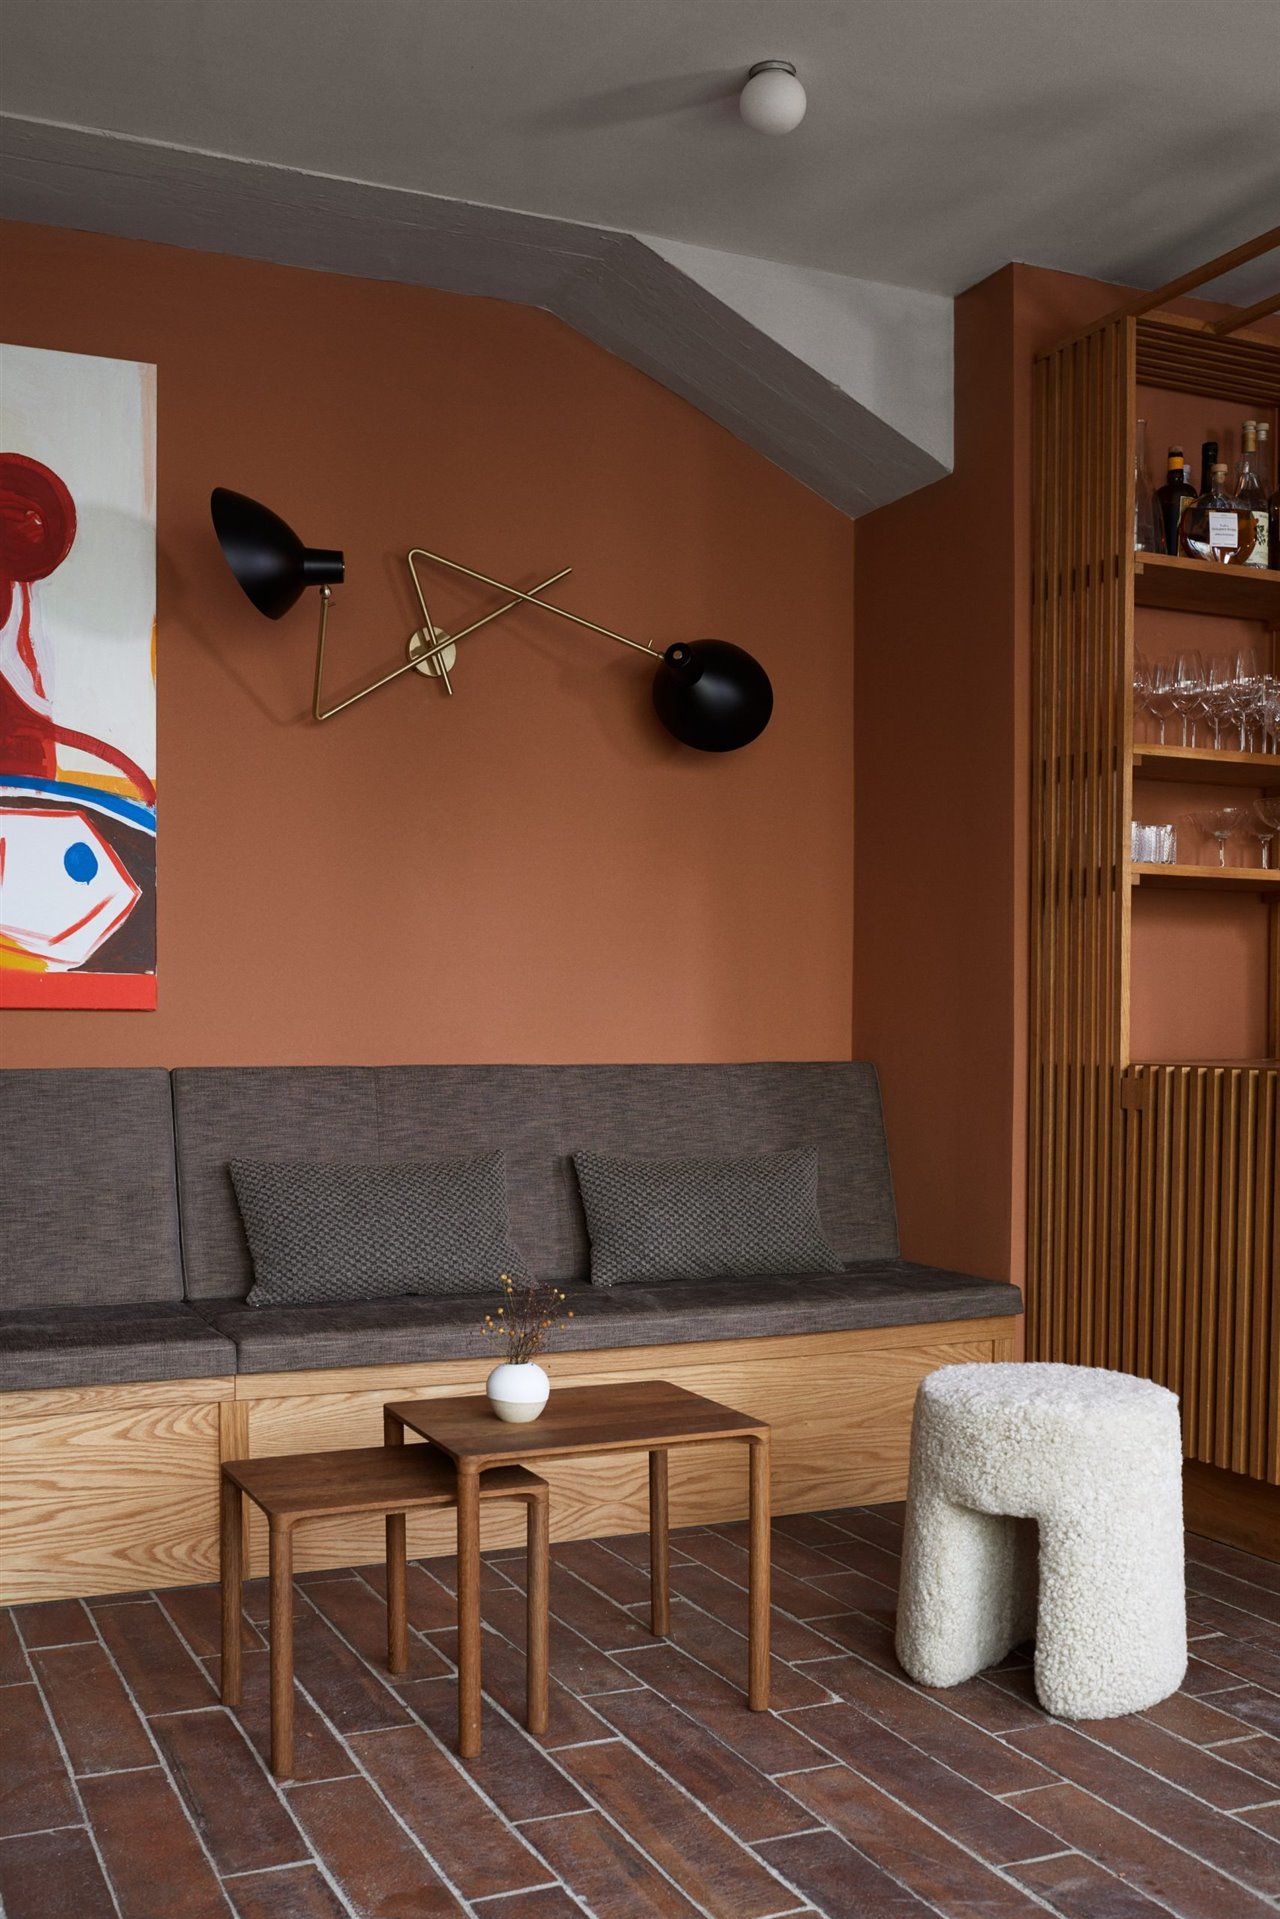 Las paredes de color rojizo combinan perfectamente con los suelos de ladrillo.